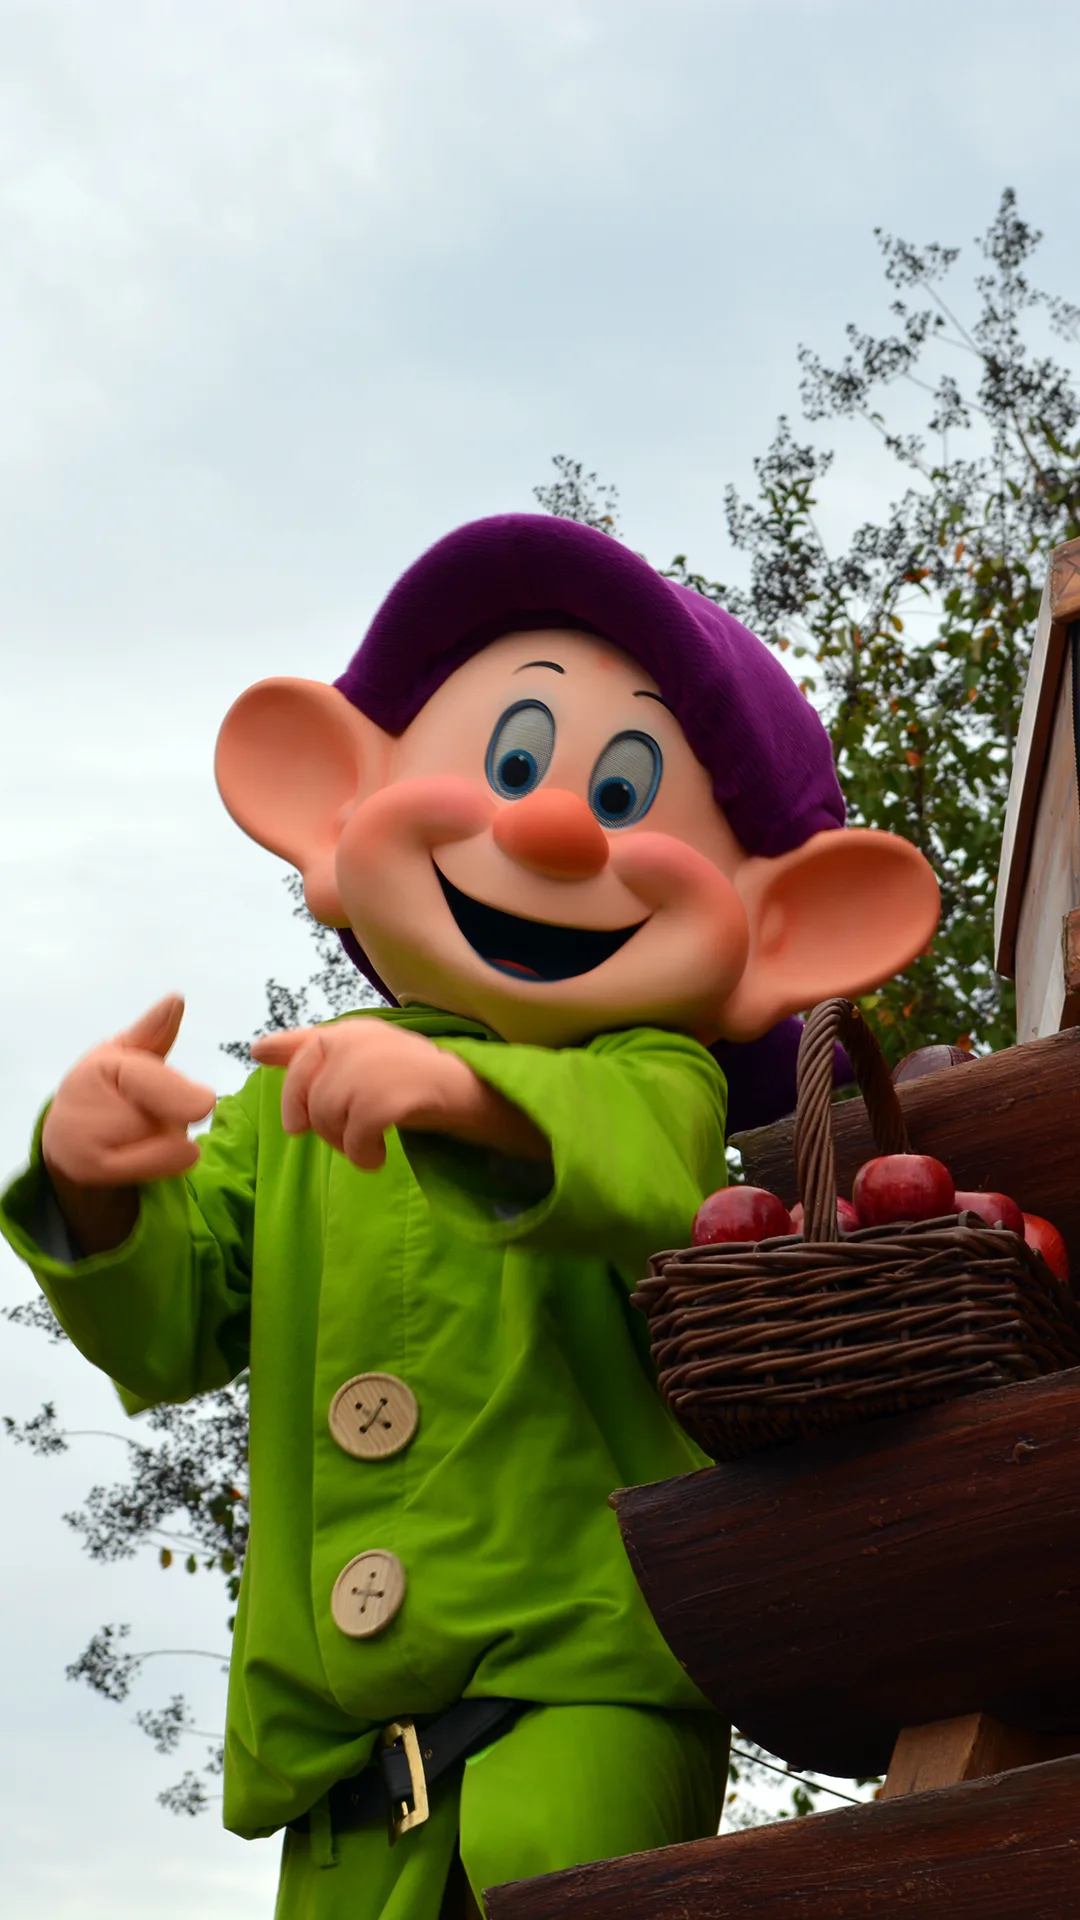 Walt Disney World, Magic Kingdom, Celebrate a Dream Come True Parade, Dopey